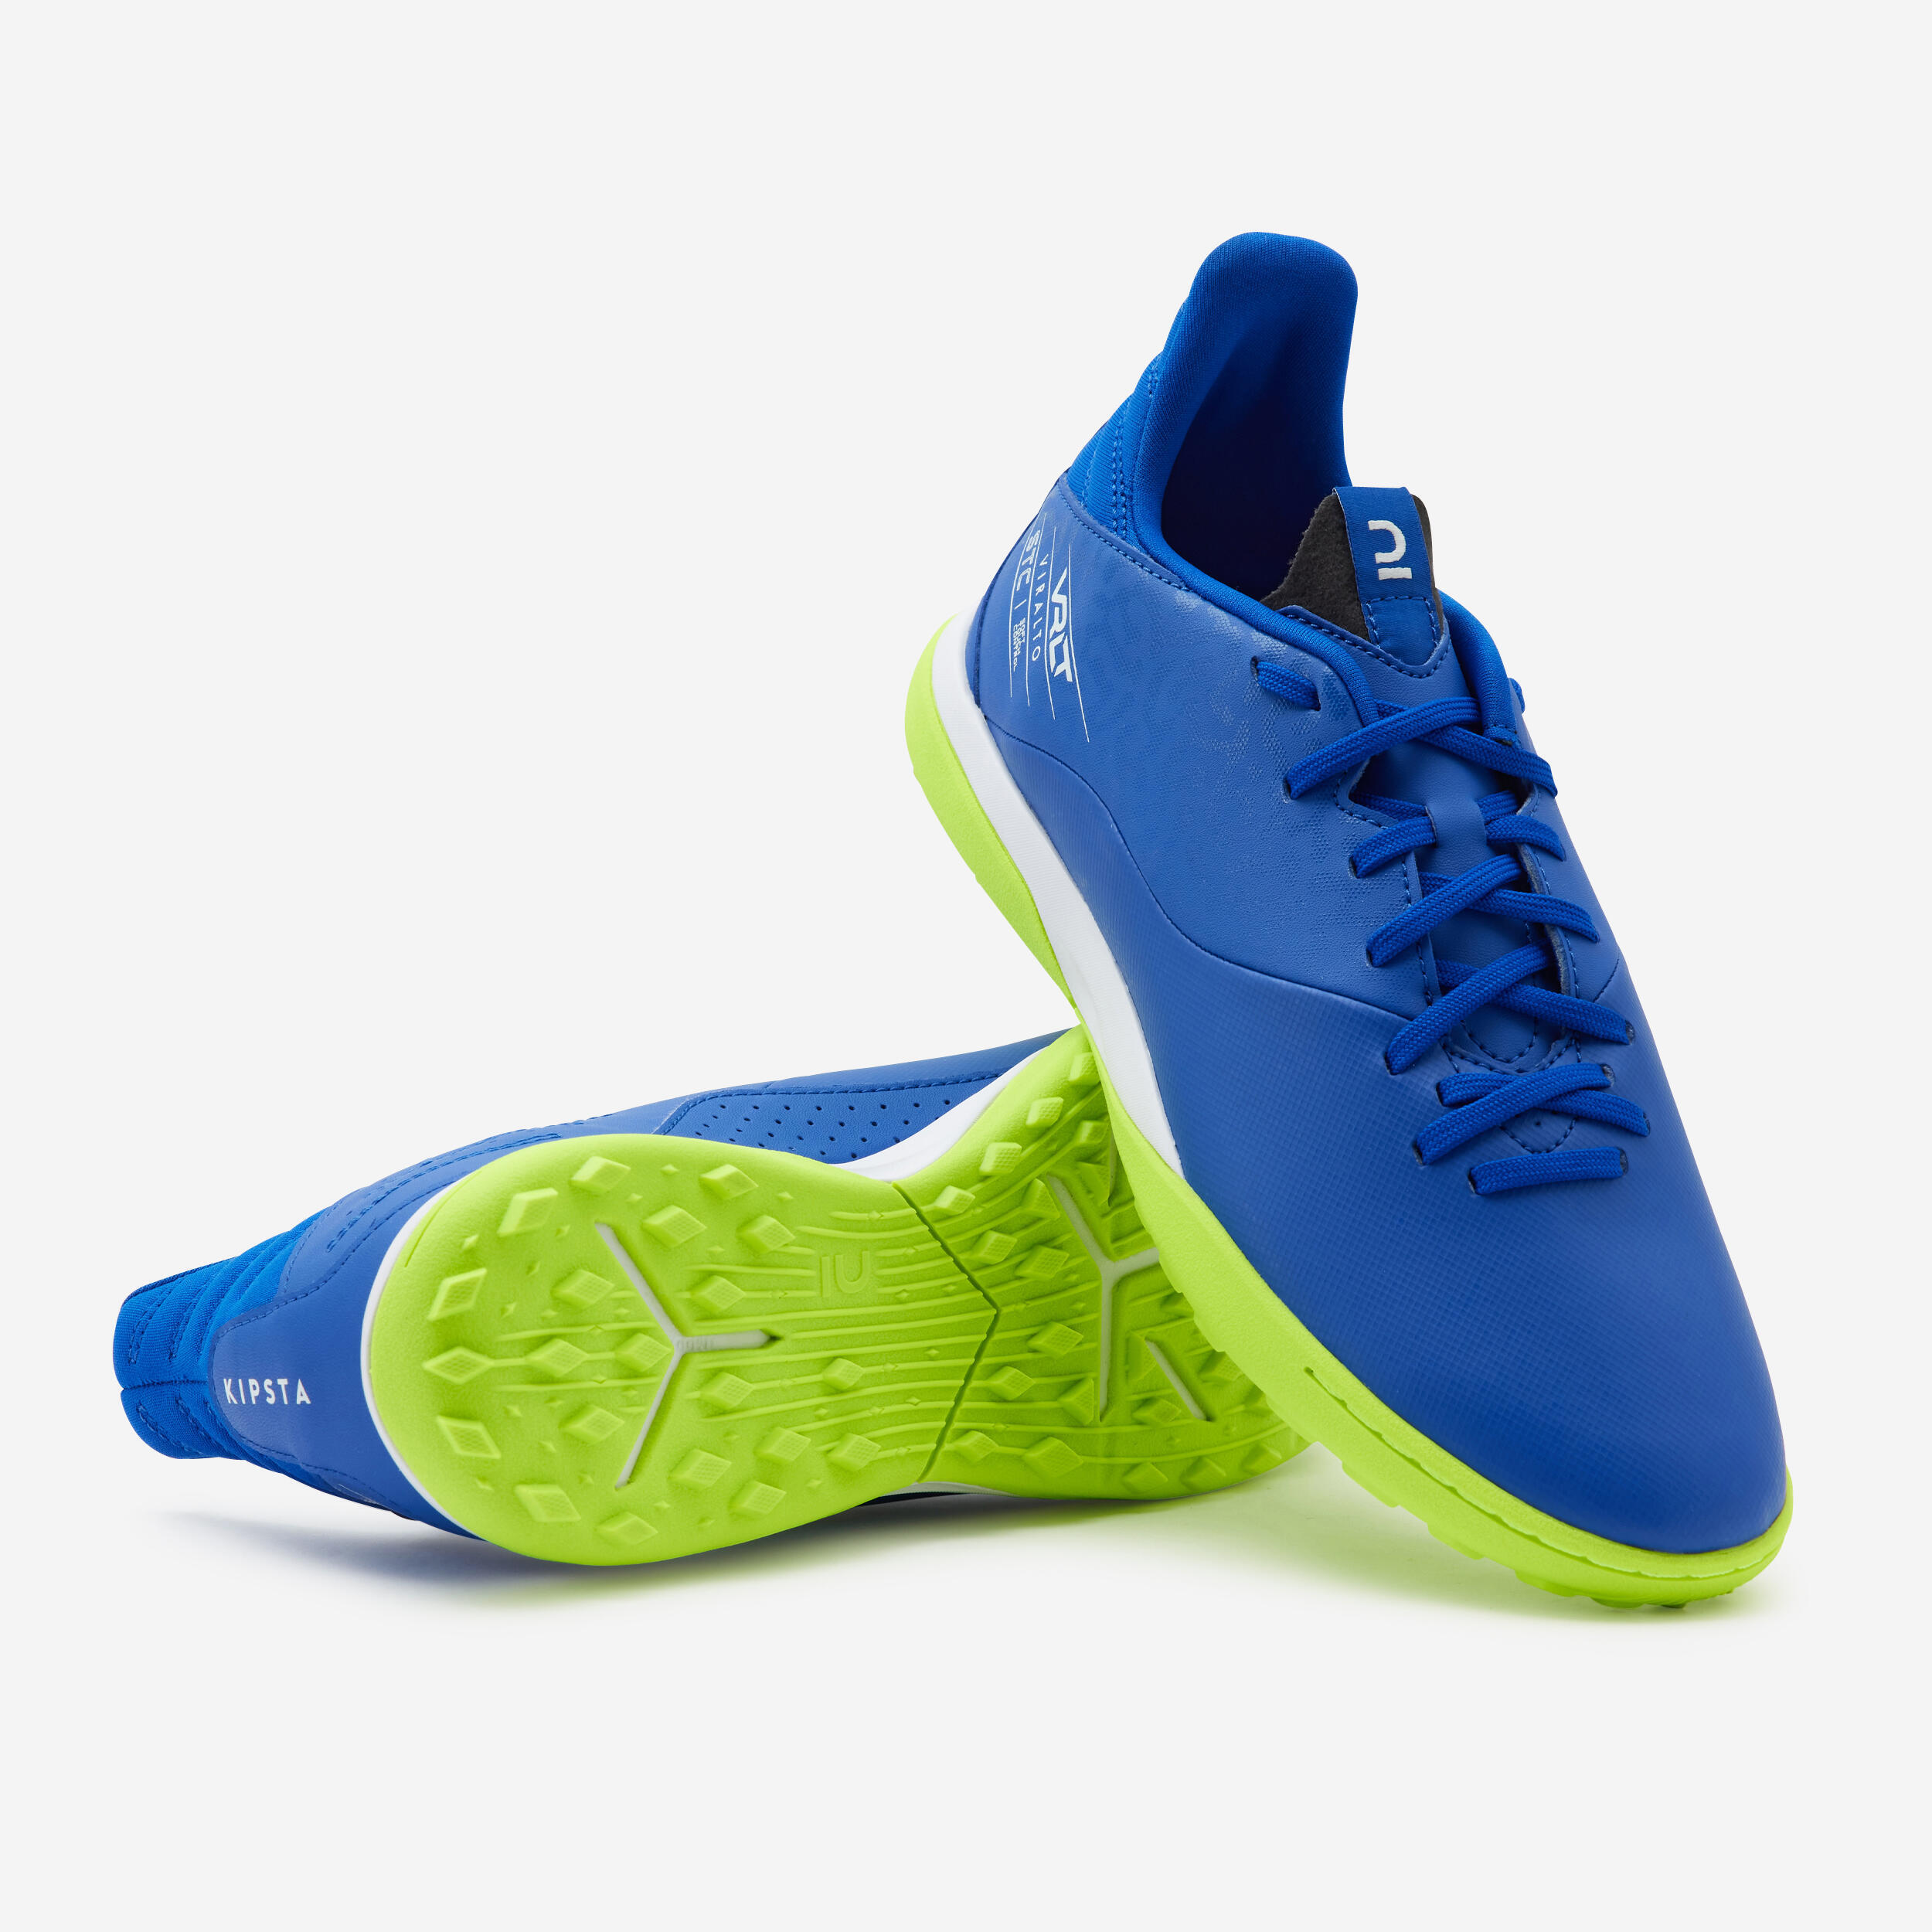 Turf Football Boots Viralto I TF - Blue/Yellow 8/8